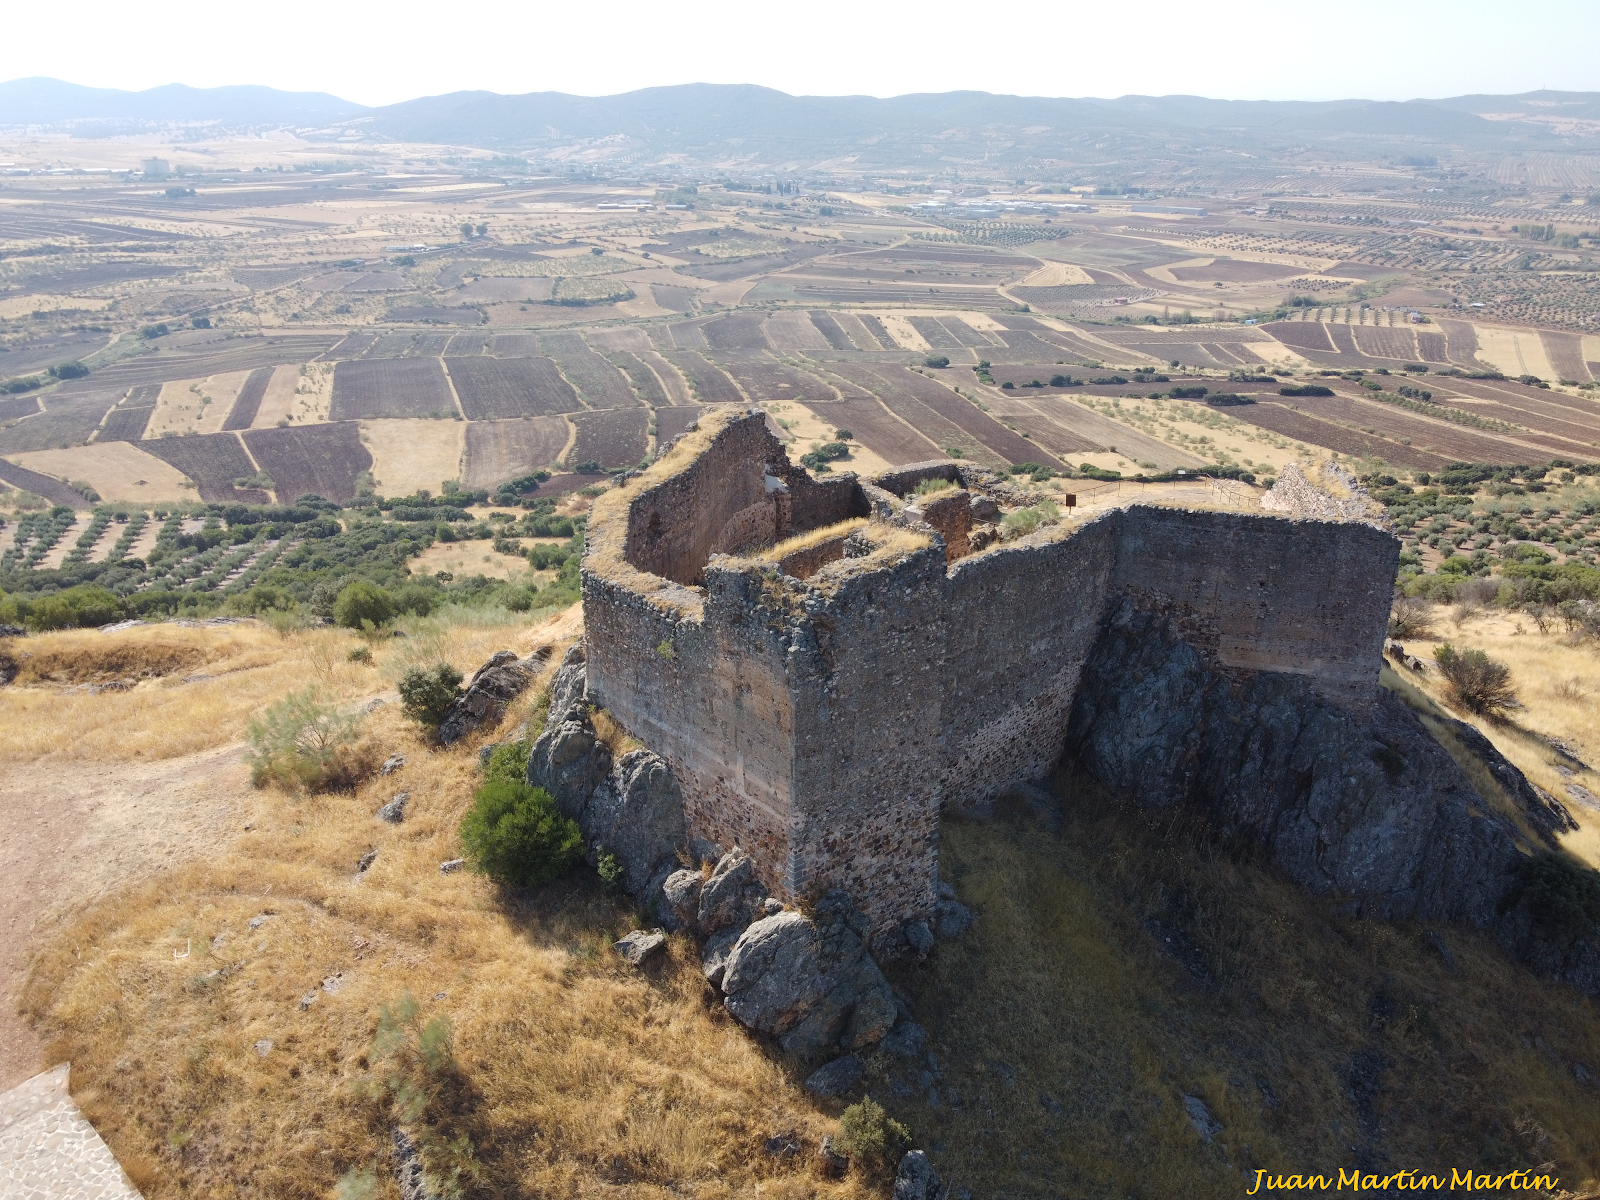 El castillo de Miraflores de Piedrabuena (Ciudad Real) a vista de drone.